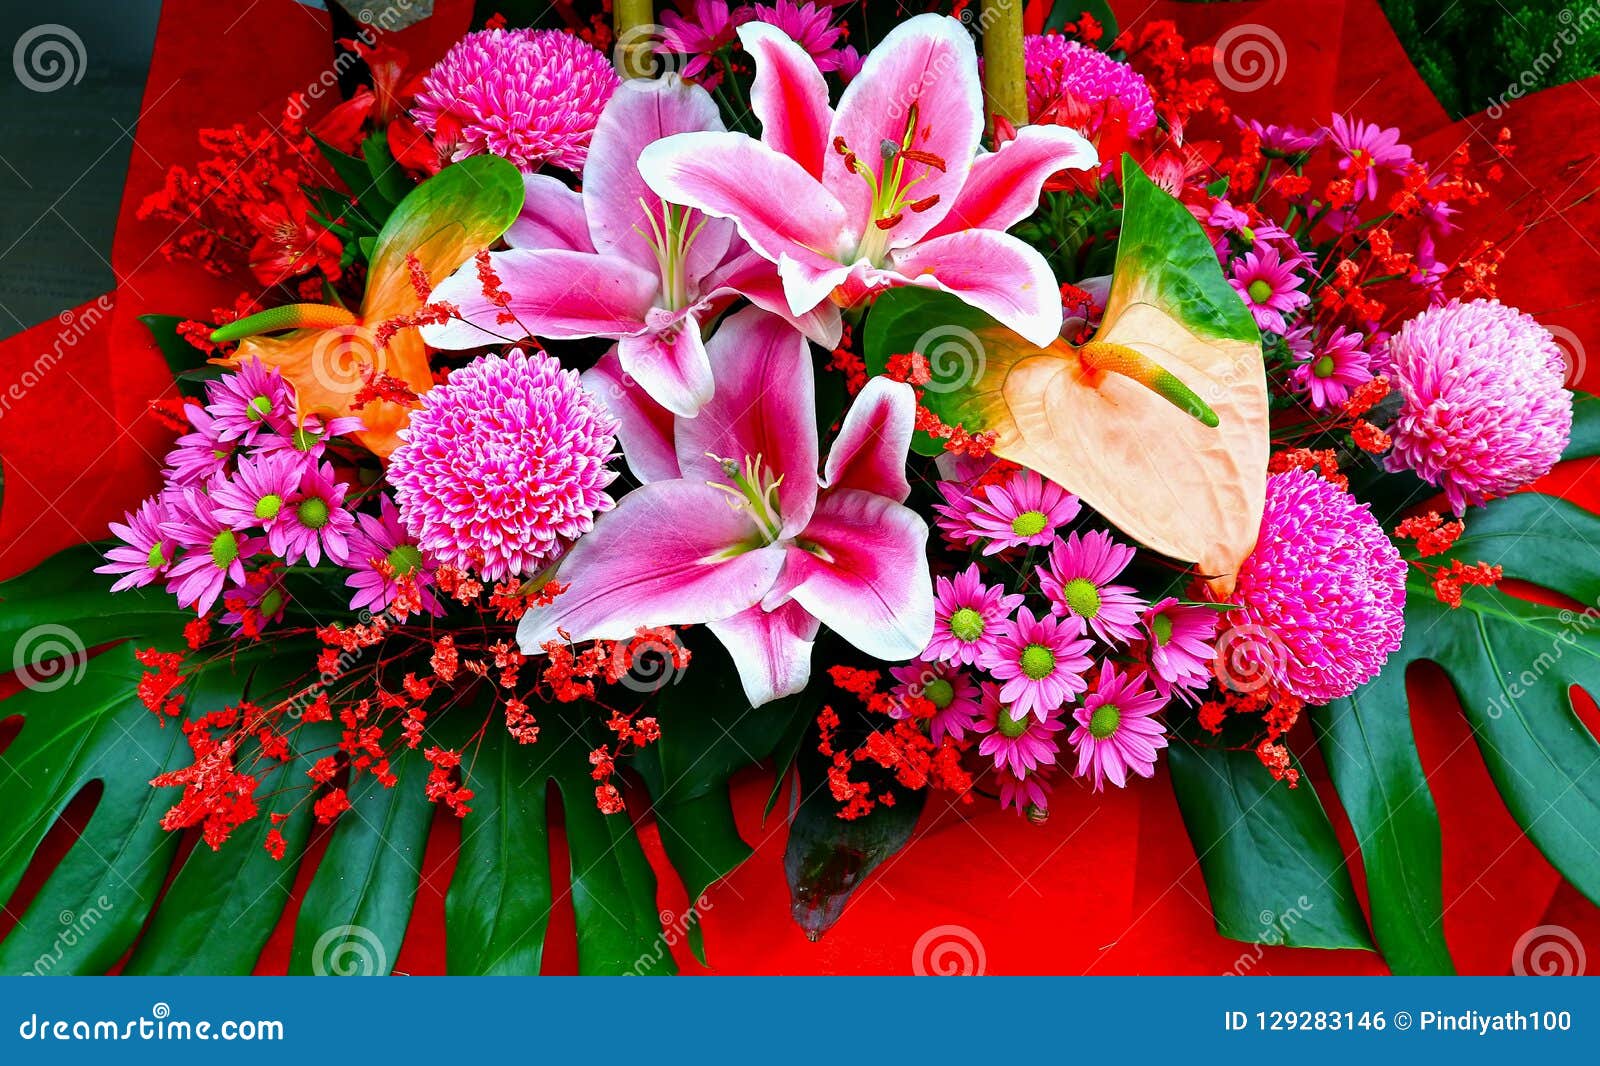 Exotic Tropical Flowers Bouquet Arrangement Stock Photo Image Of Bloom Vivid 129283146